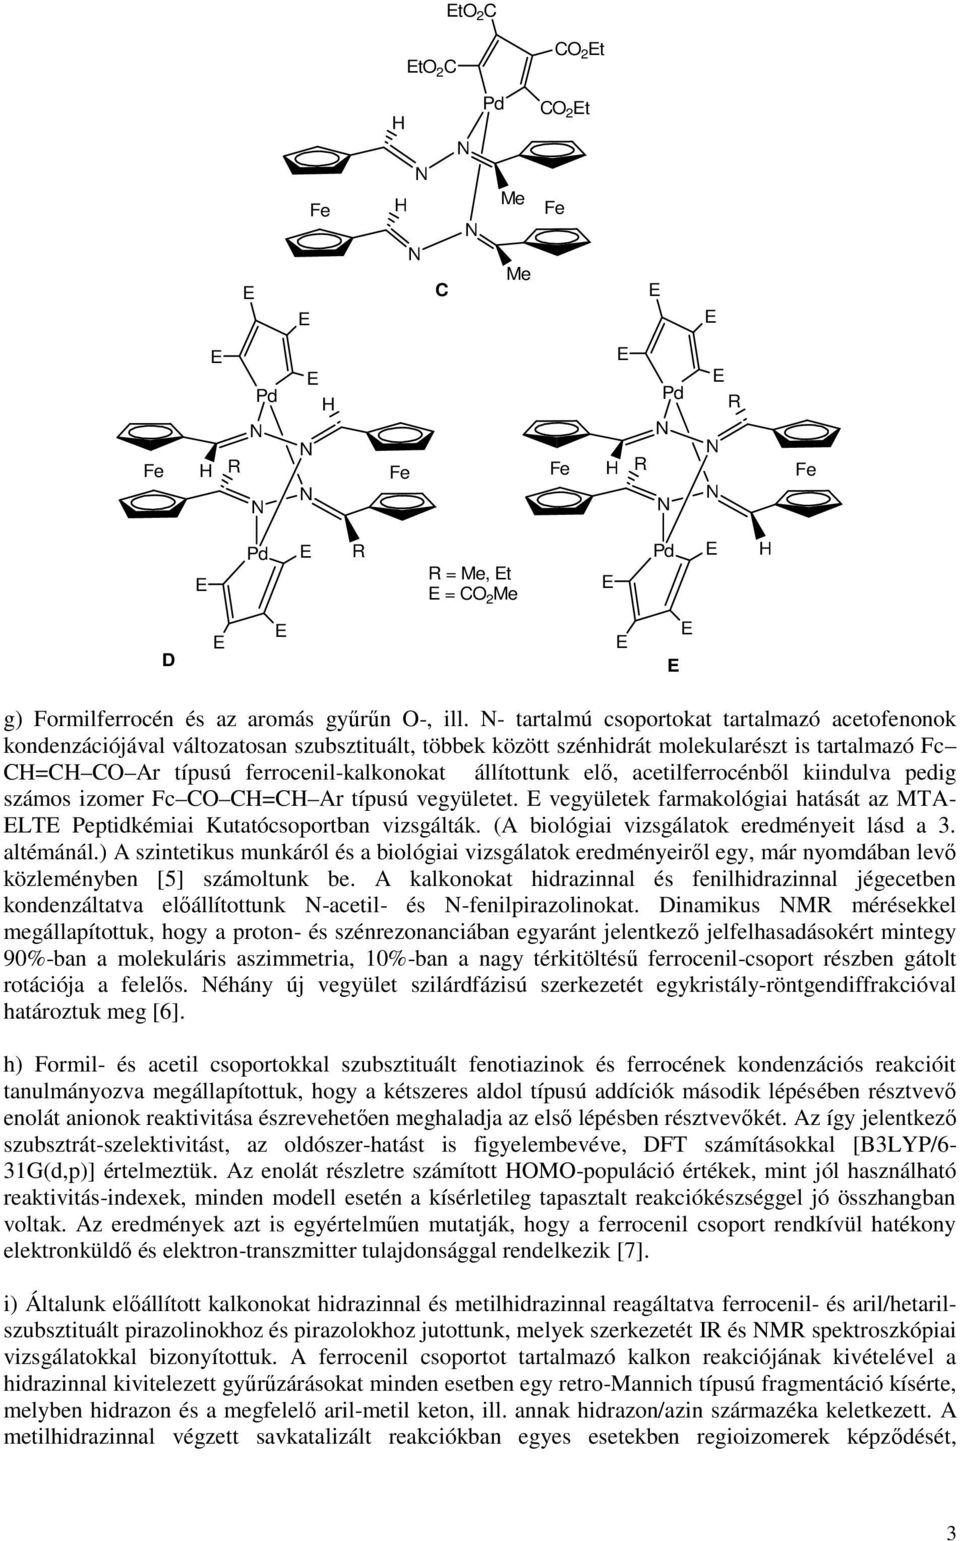 acetilferrocénből kiindulva pedig számos izomer C C=C Ar típusú vegyületet. vegyületek farmakológiai hatását az MTA- LT Peptidkémiai Kutatócsoportban vizsgálták.